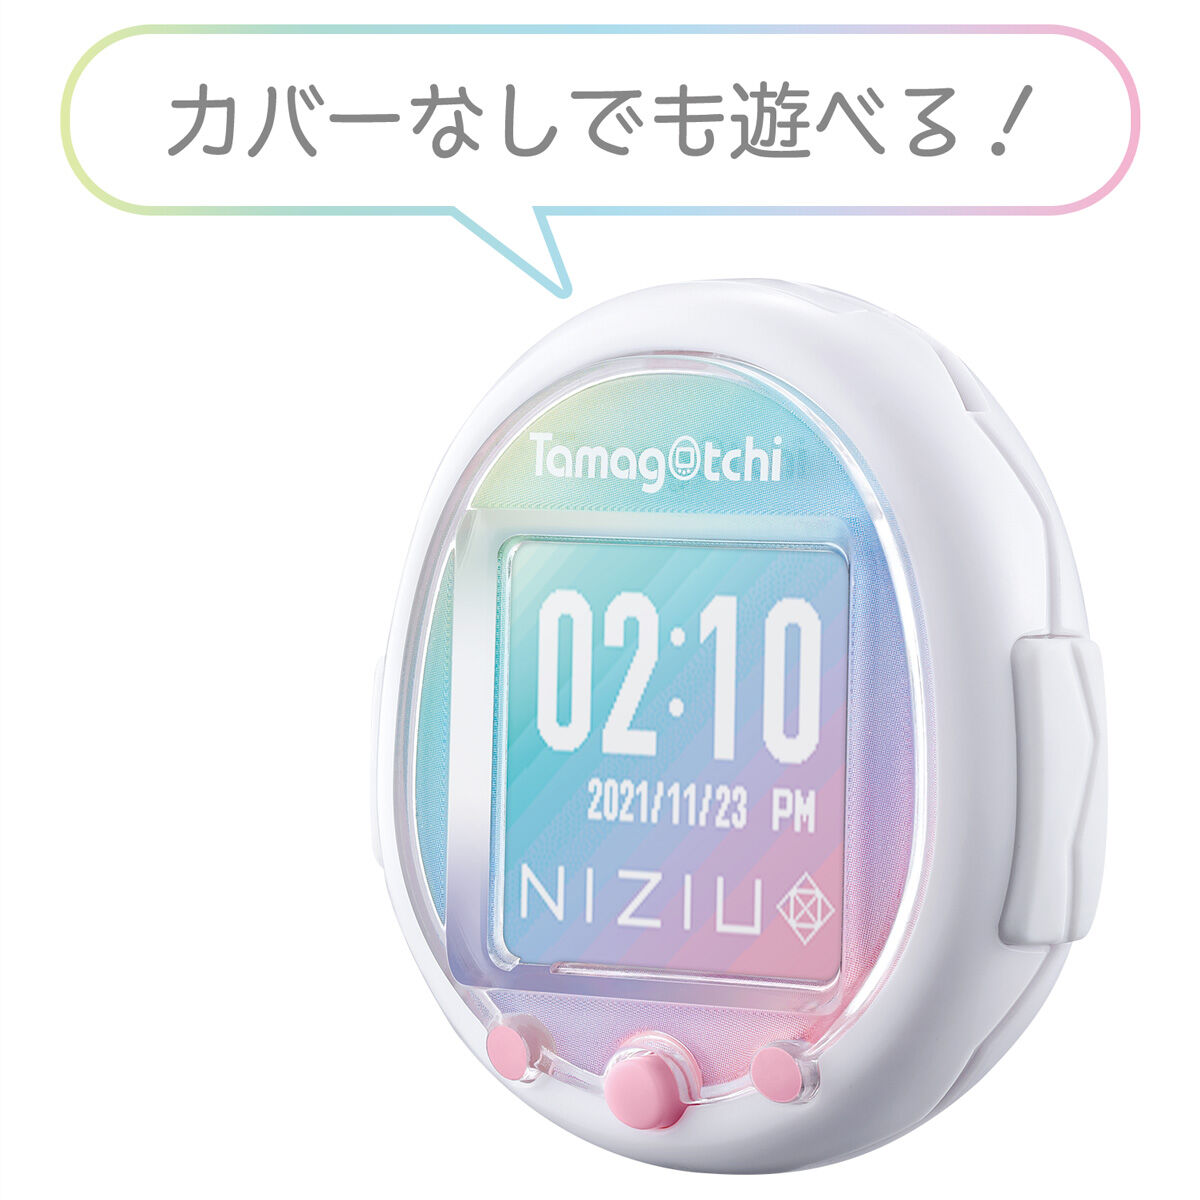 たまごっちスマート『Tamagotchi Smart NiziUスペシャルセット』たまごっち-007